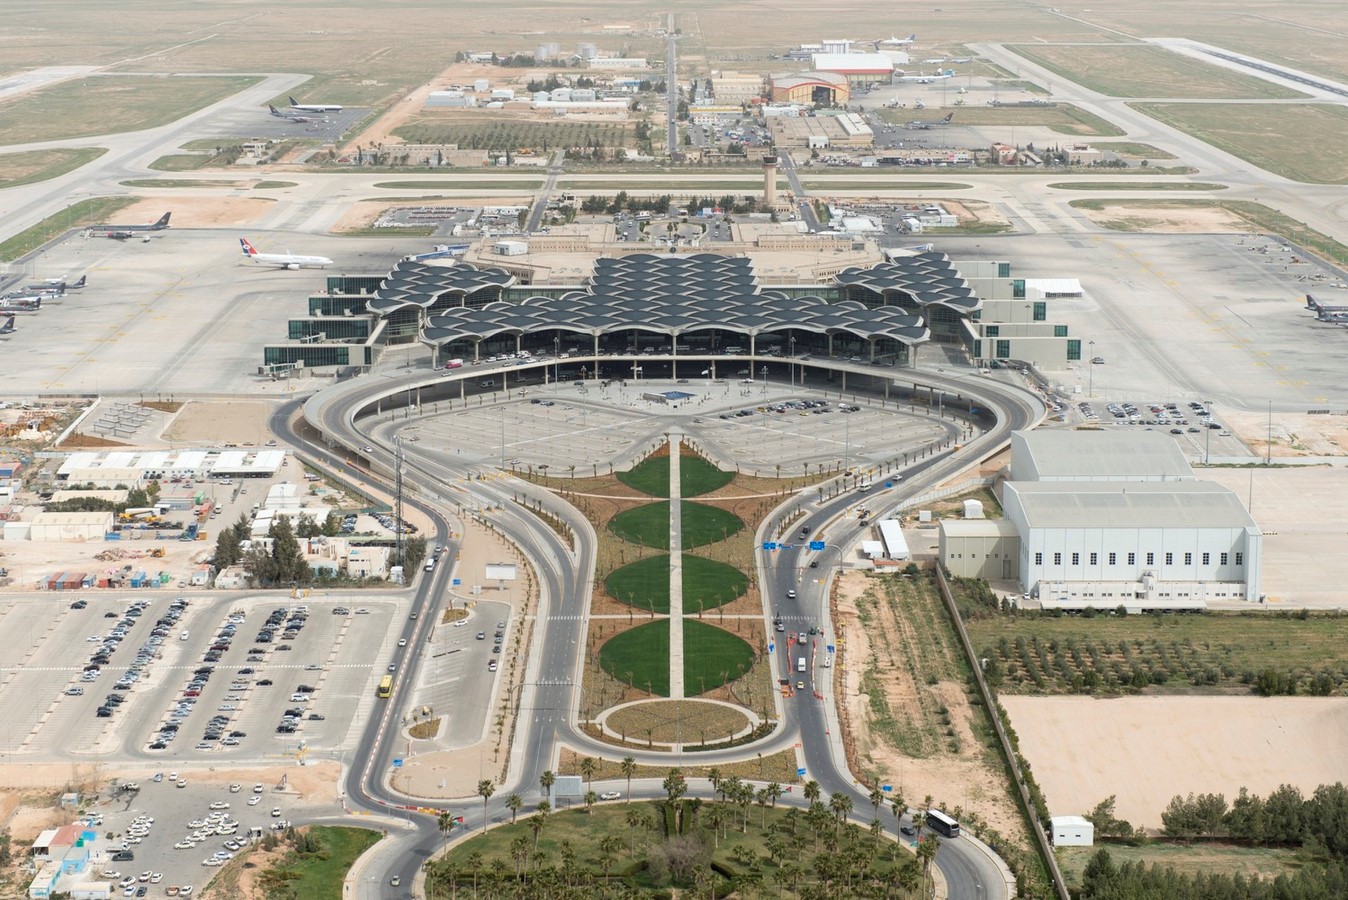 10 Inspirerende Luchthaven ontwerpen rond de wereld - Sheet25